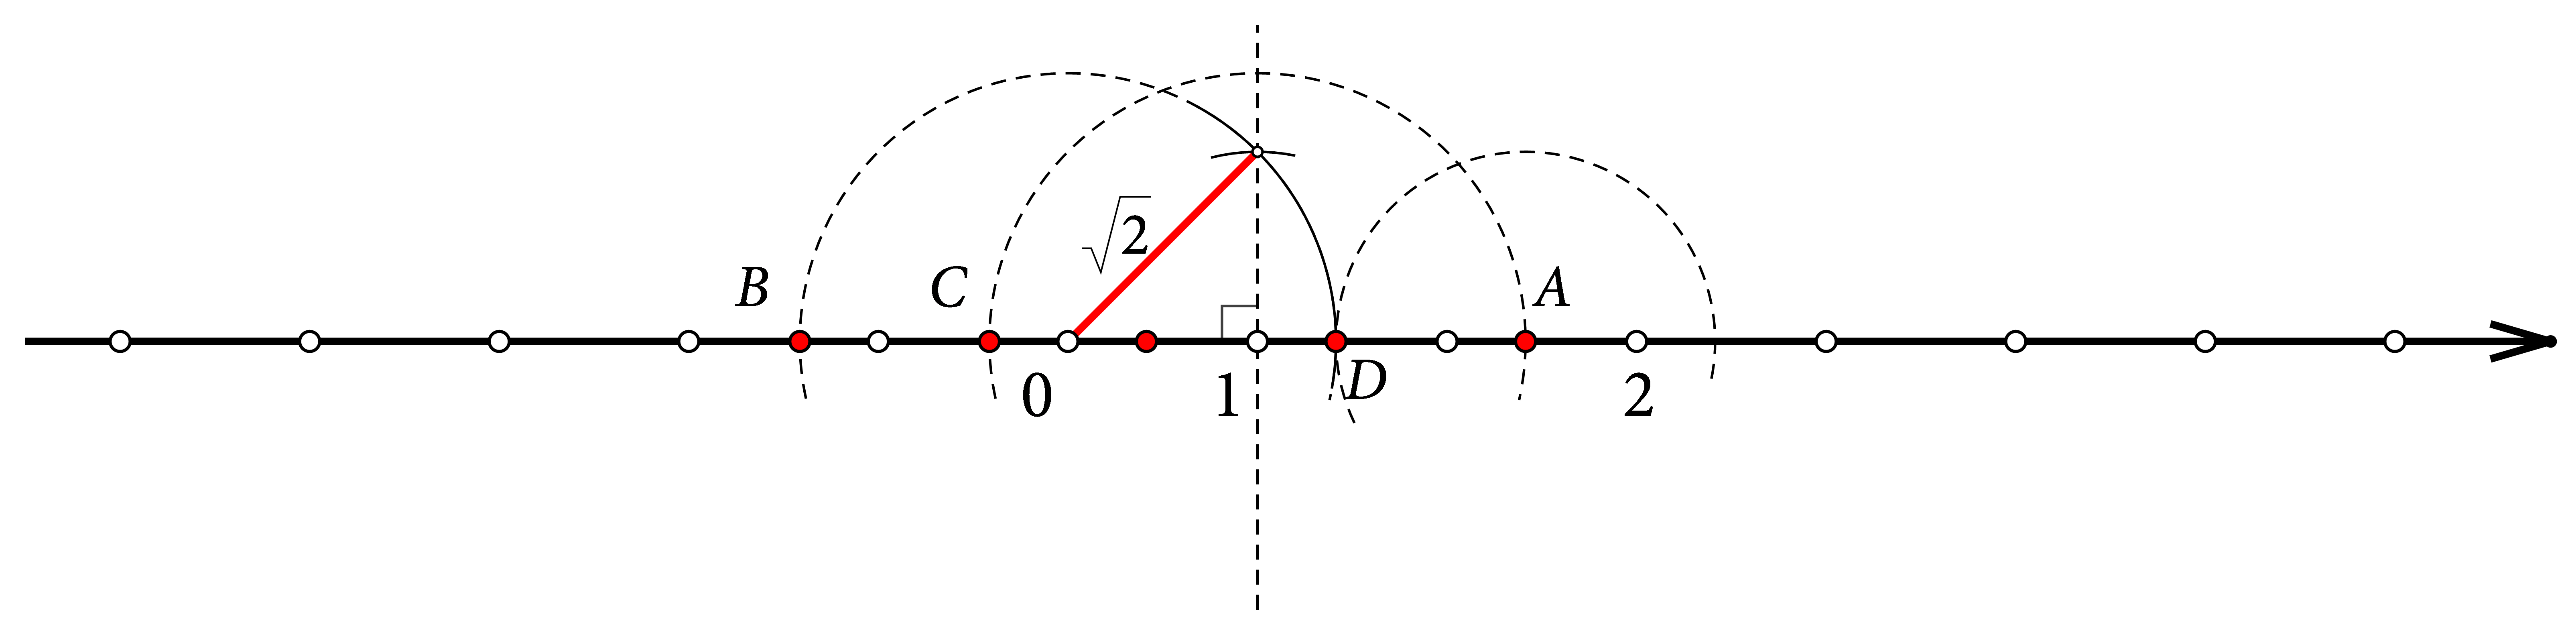 Na slici je prikazana konstrukcija dužine duljine korijen od 2 nad jediničnom dužinom i točke koje možemo dobiti njenim nanošenjem.